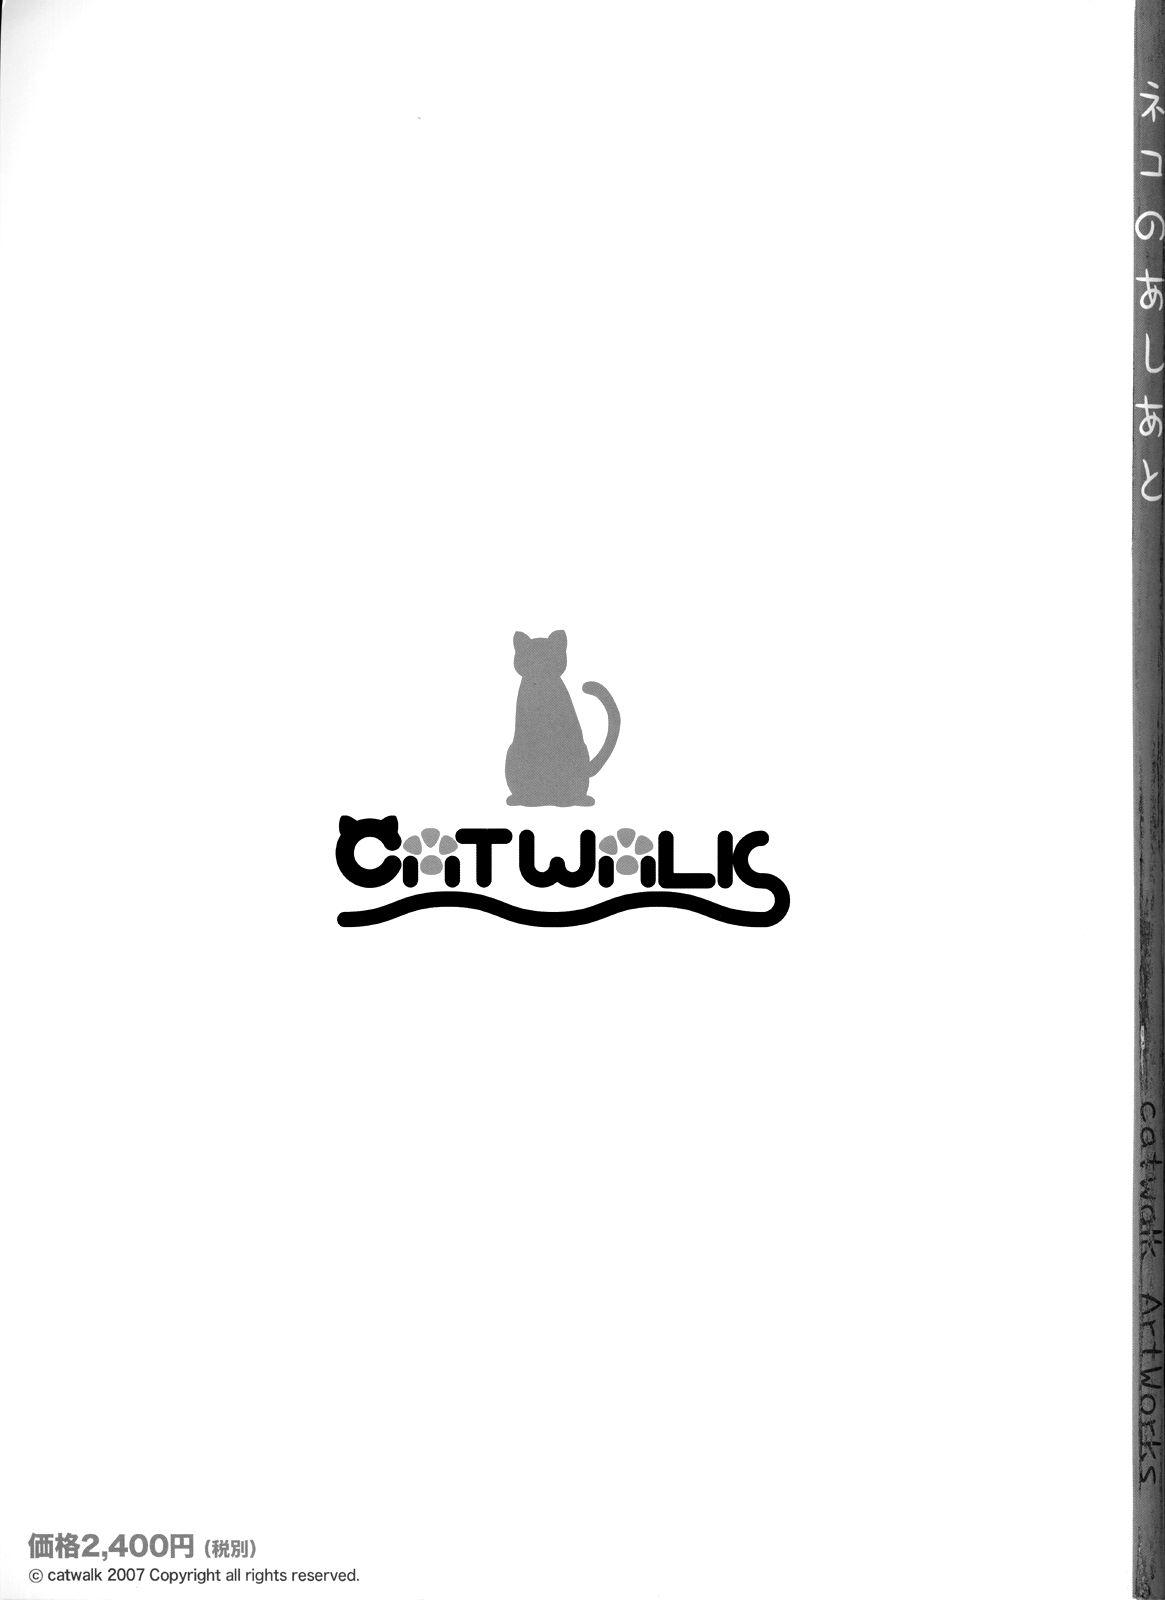 catwalk ArtWorks 2